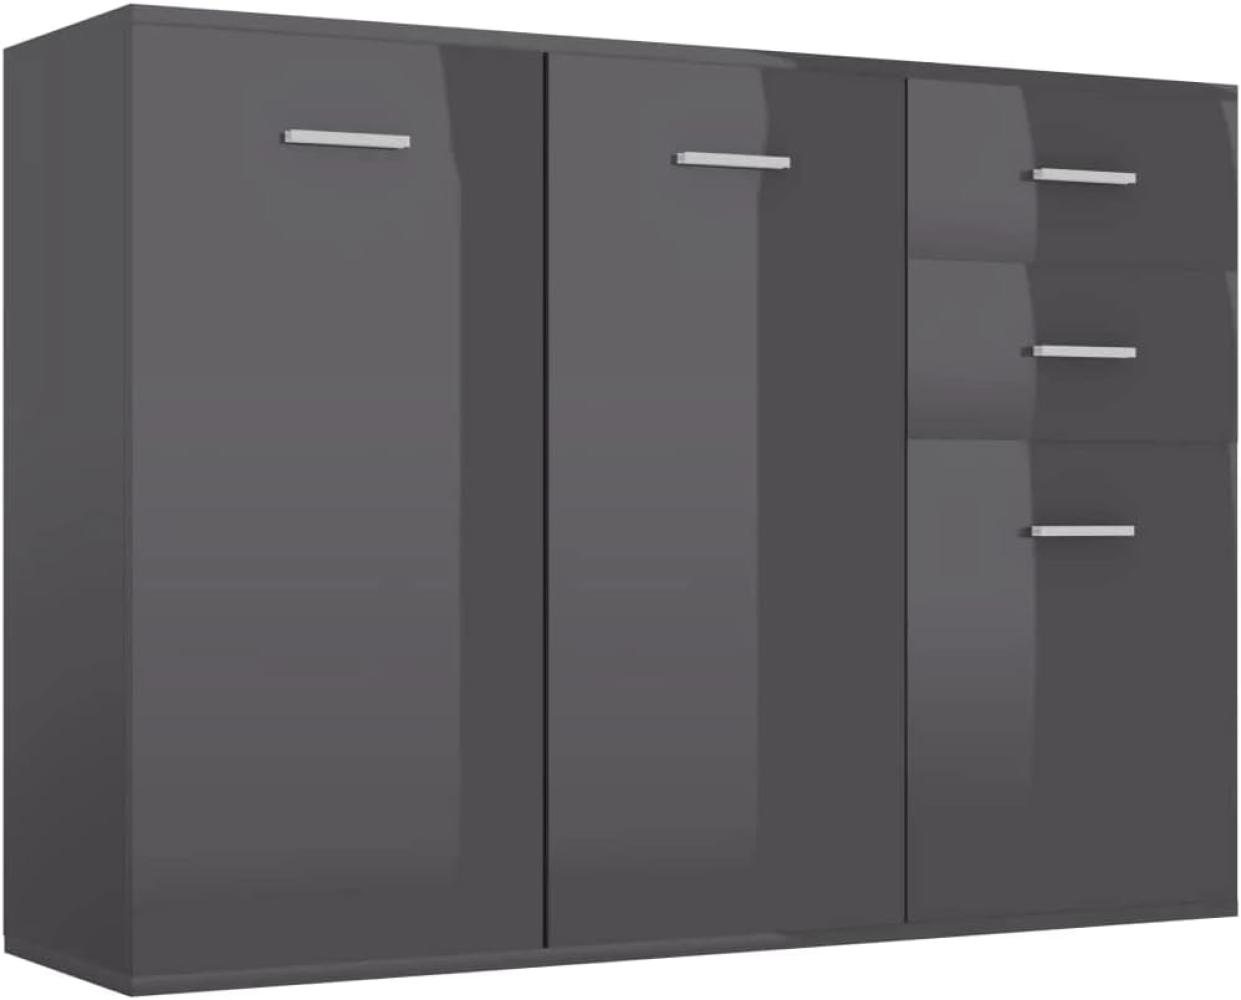 vidaXL Sideboard mit 3 Türen 2 Schubladen Highboard Kommode Standschrank Mehrzweckschrank Anrichte Schrank Hochglanz-Grau 105x30x75cm Spanplatte Bild 1